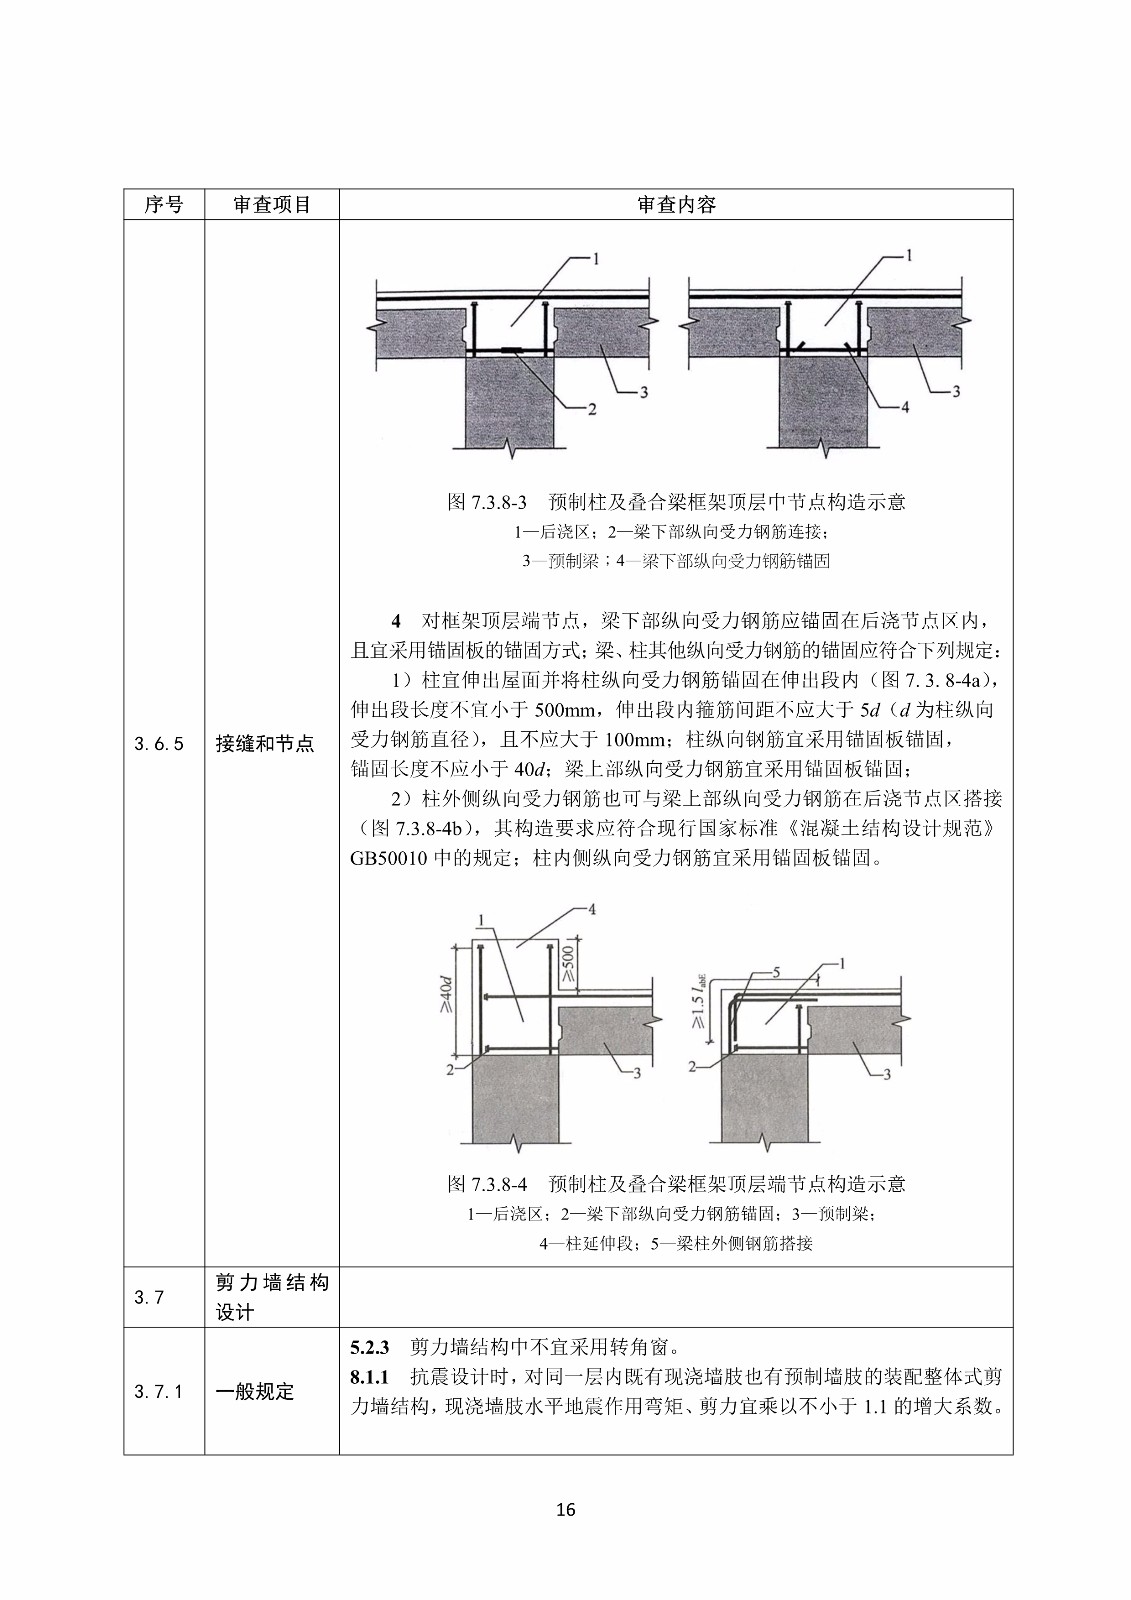 装配式混凝土结构建筑工程施工图设计文件技术审查要点_20.jpg